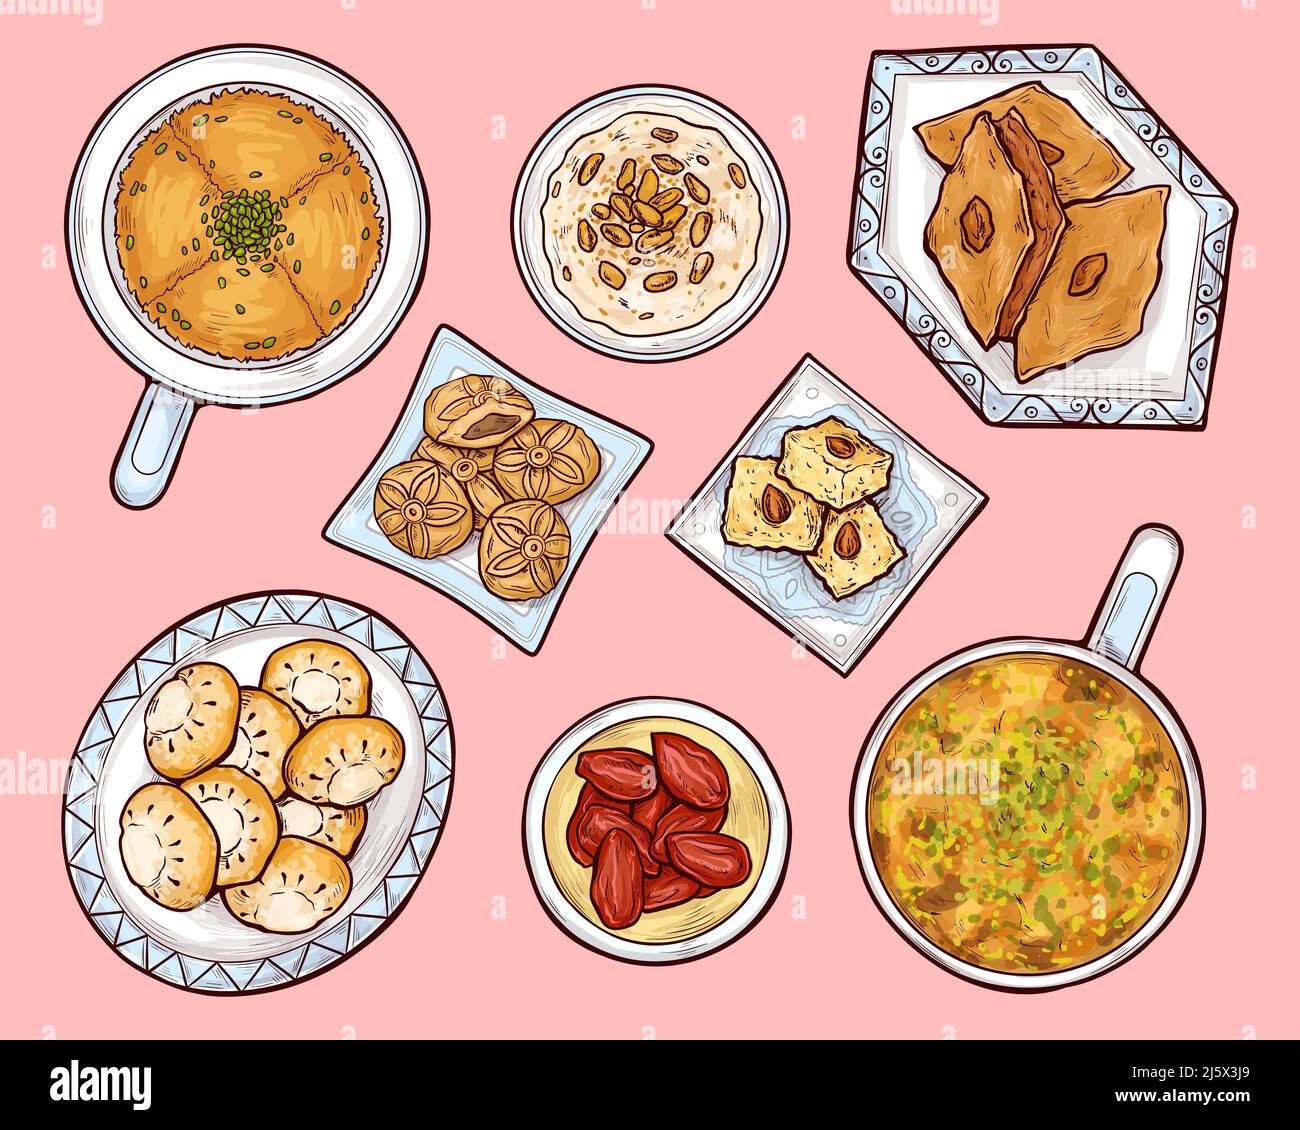 Arabische Süßigkeiten, Draufsicht. Arabisches ramadan Essen Kunafa, Maamul, Reispudding. Orientalische Küche Gebäck auf Porzellantellern mit traditionellen ethnischen Ornamenten Stock Vektor